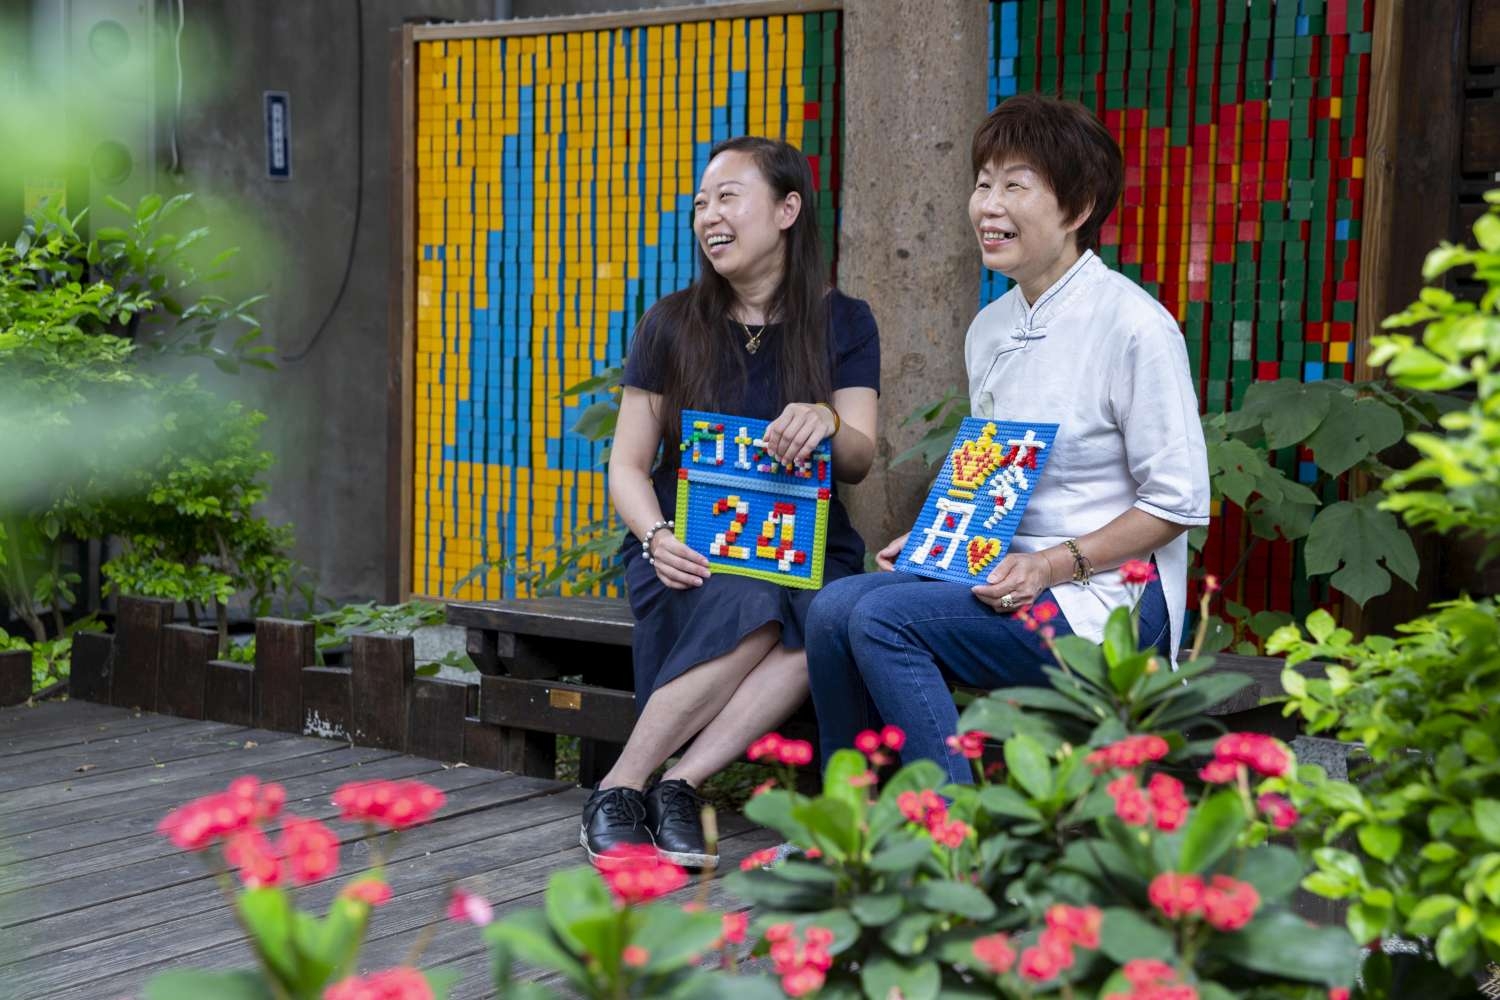 石坊里里長彭陳玉真（右）及社區發展協會理事長彭琳淇（左）聊起樂高美感門牌製作的生活趣事